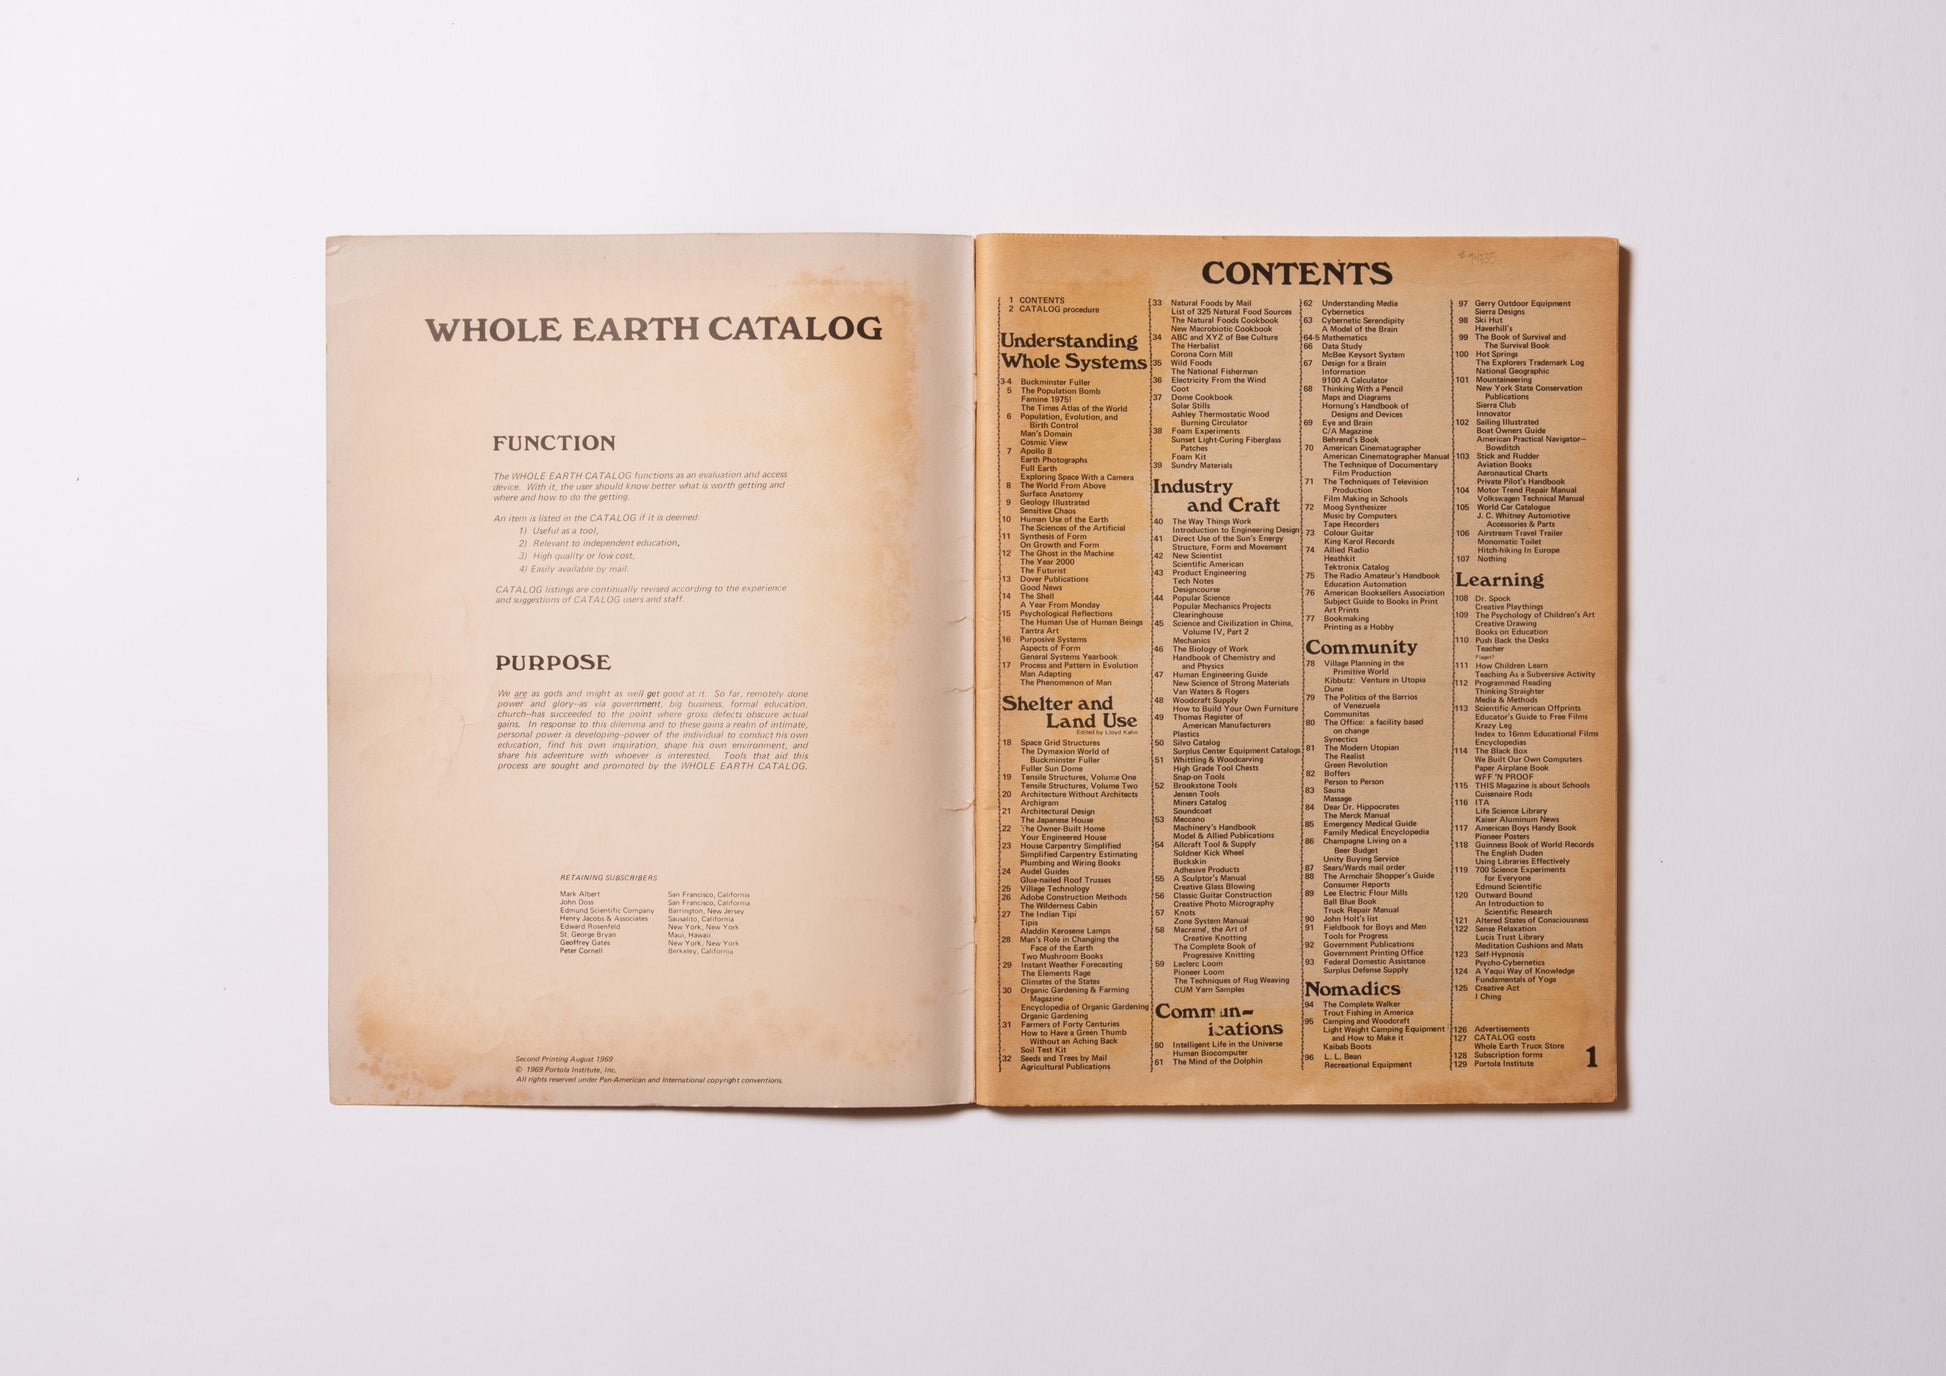 Whole Earth Catalog Spring 1969 – FRAGILE BOOKS